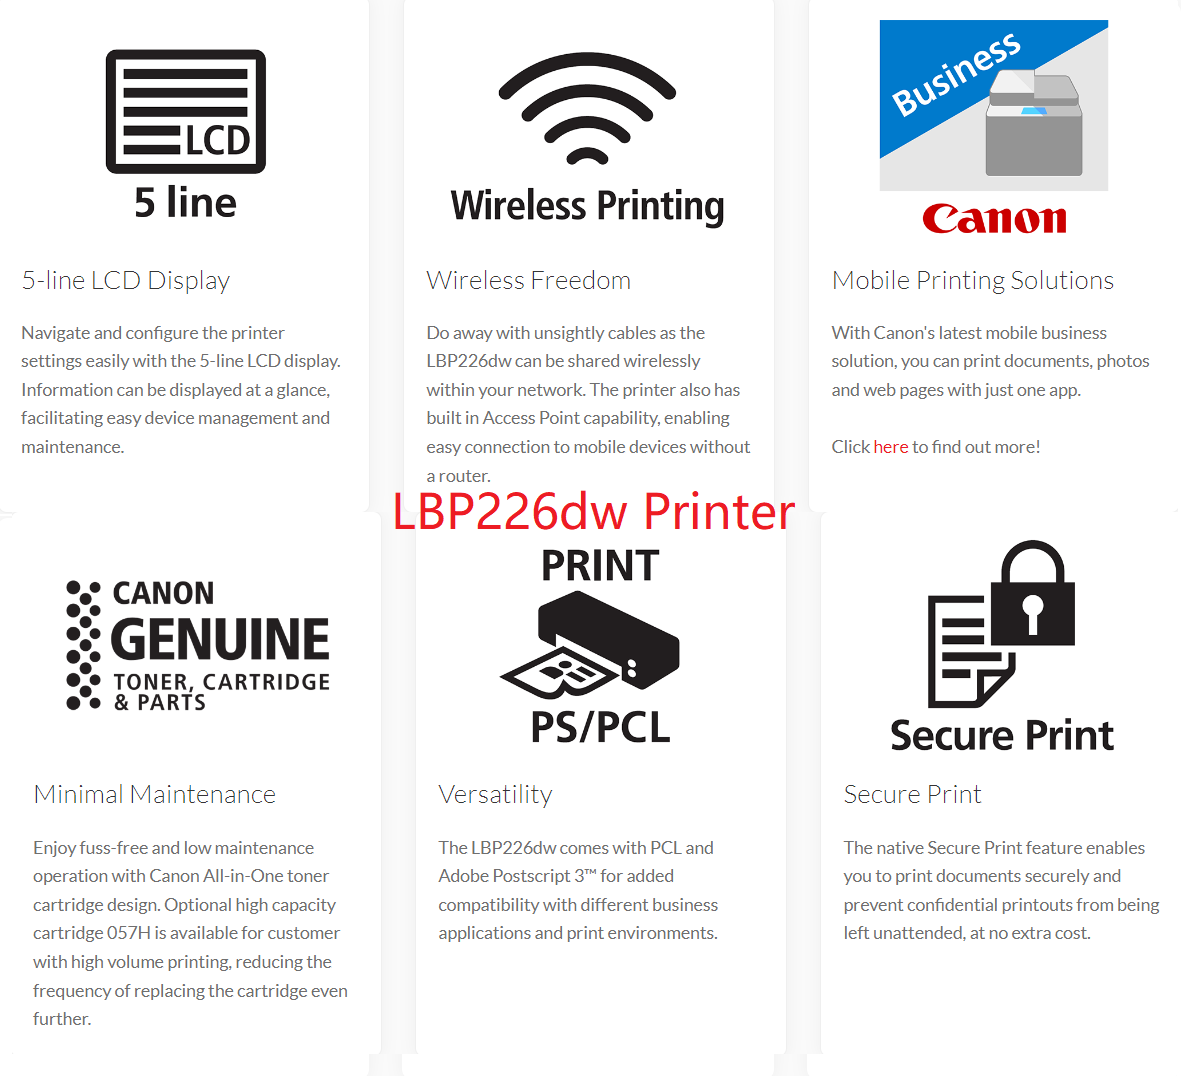 Canon imageCLASS LBP223dw / LBP226dw / LBP228x Monochrome Laser Printer